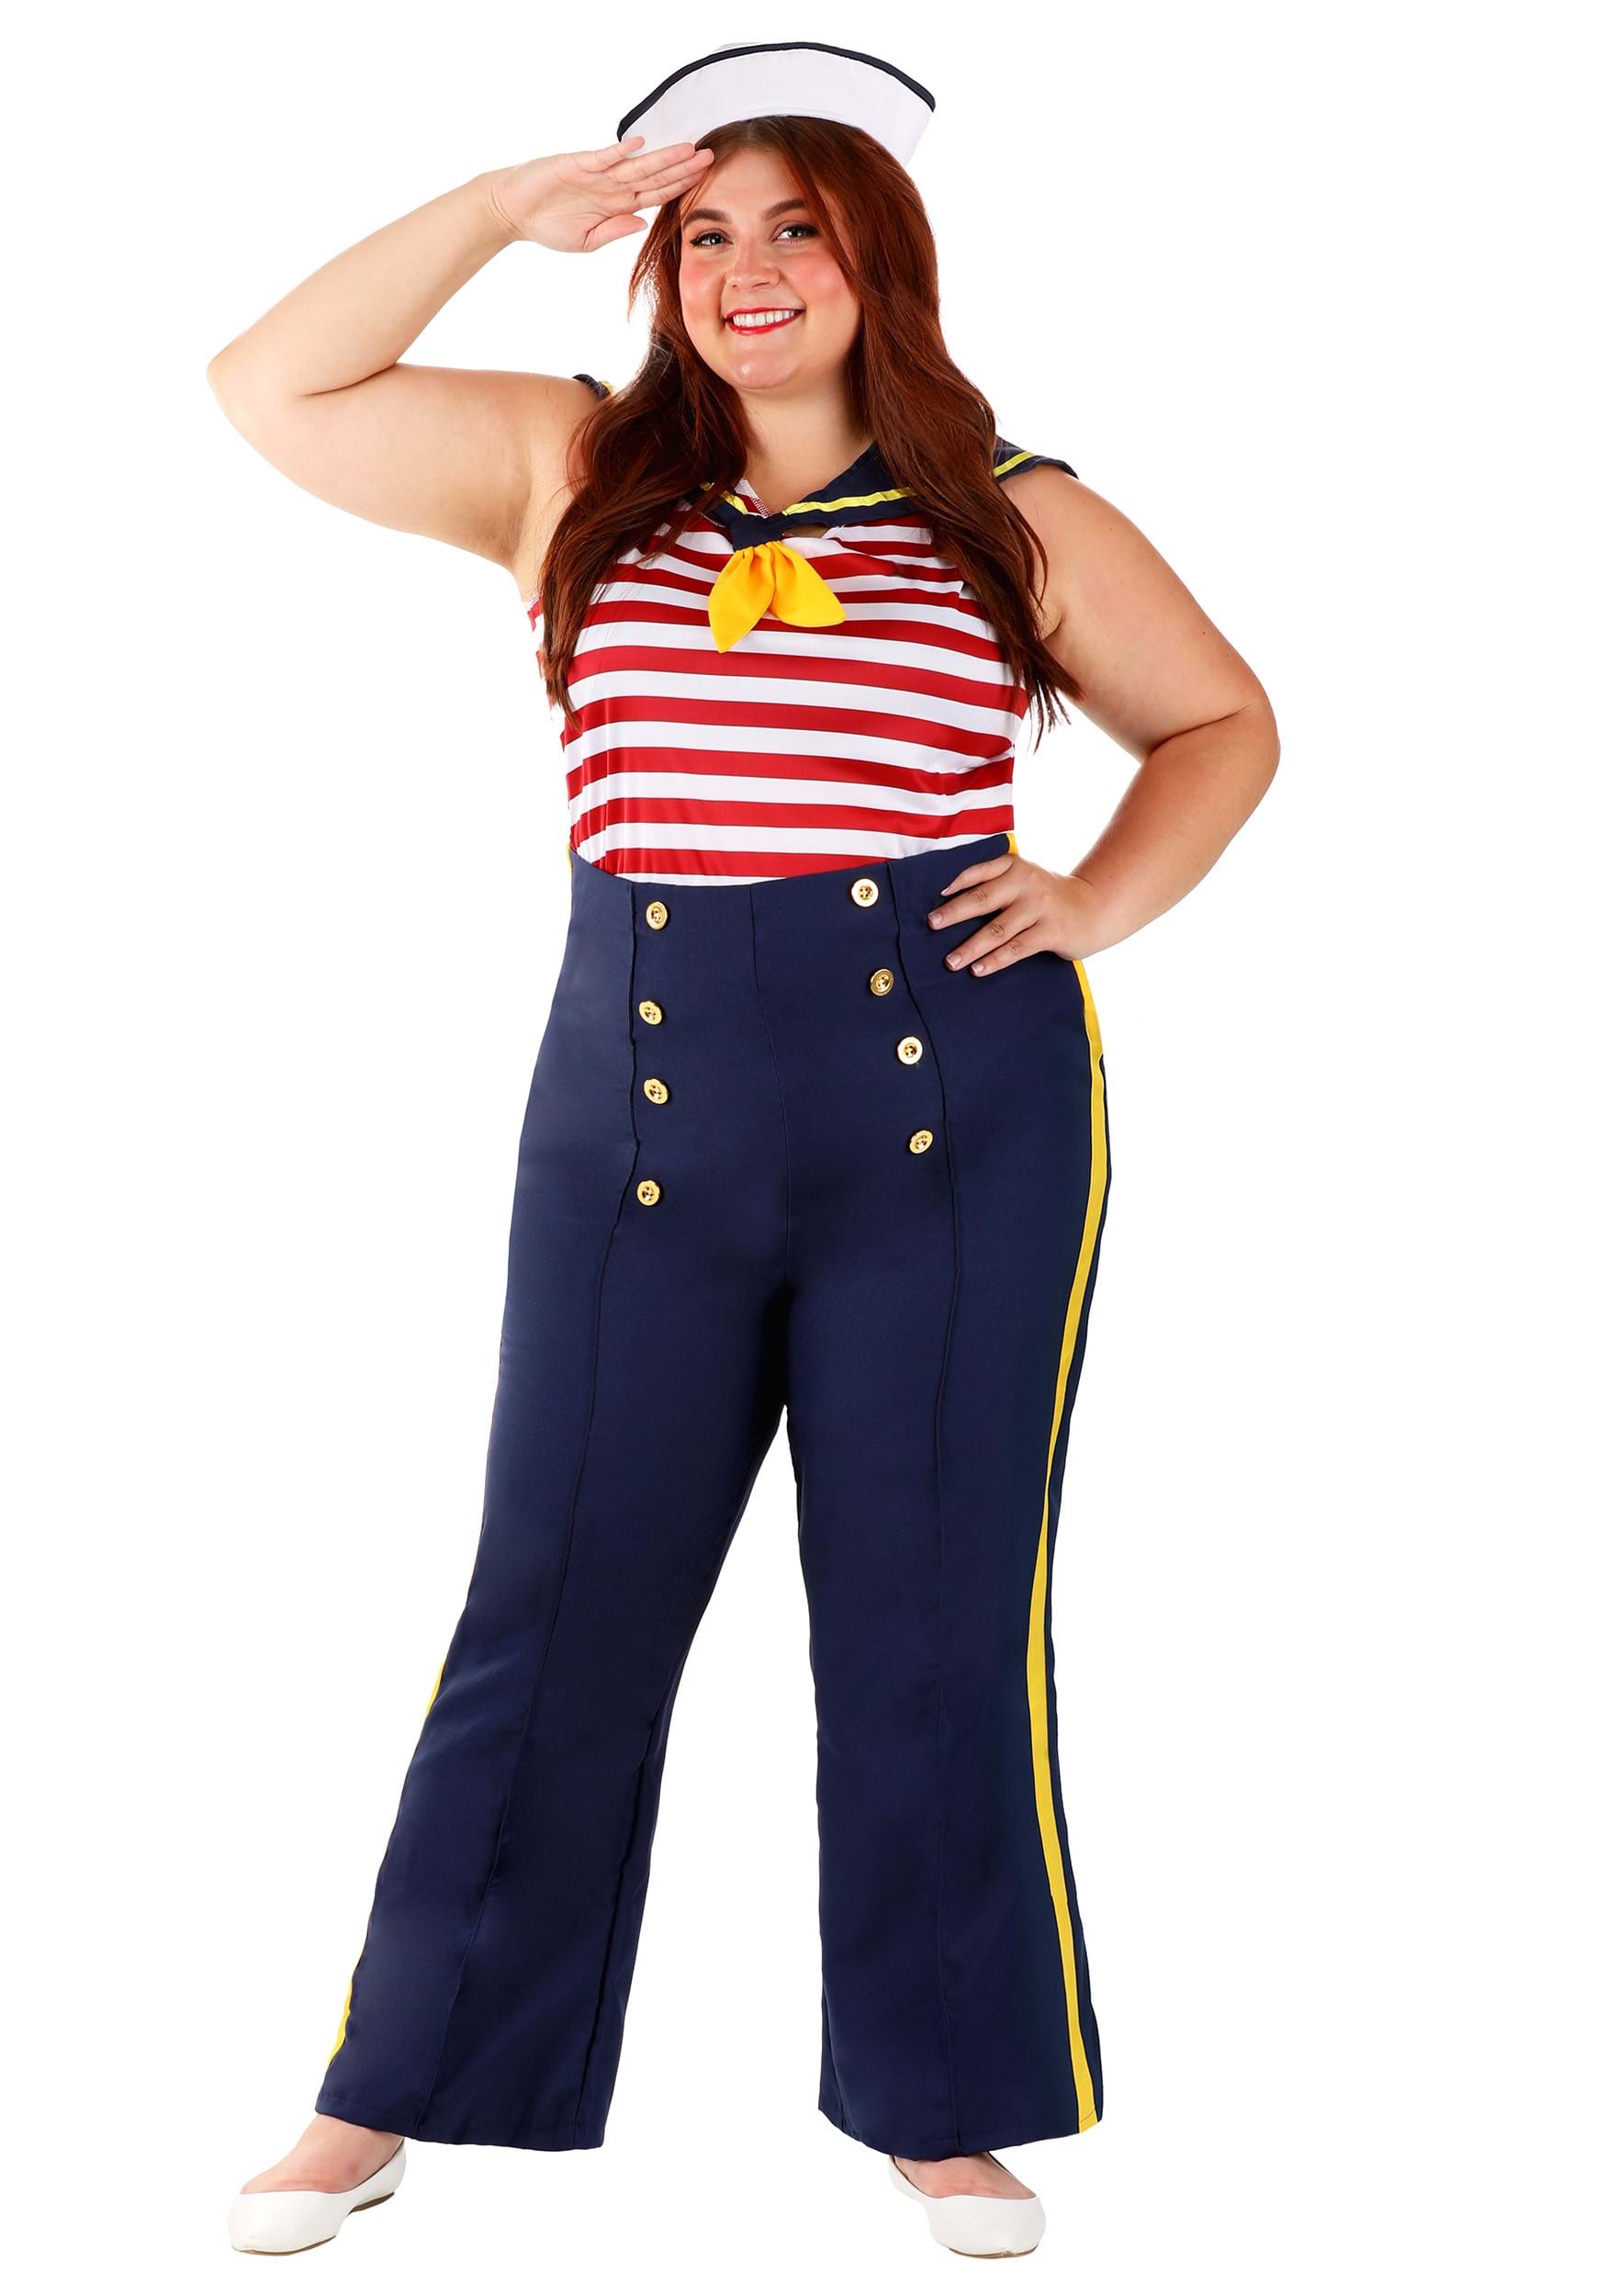 15 Sailor pants ideas  sailor pants, how to wear, clothes